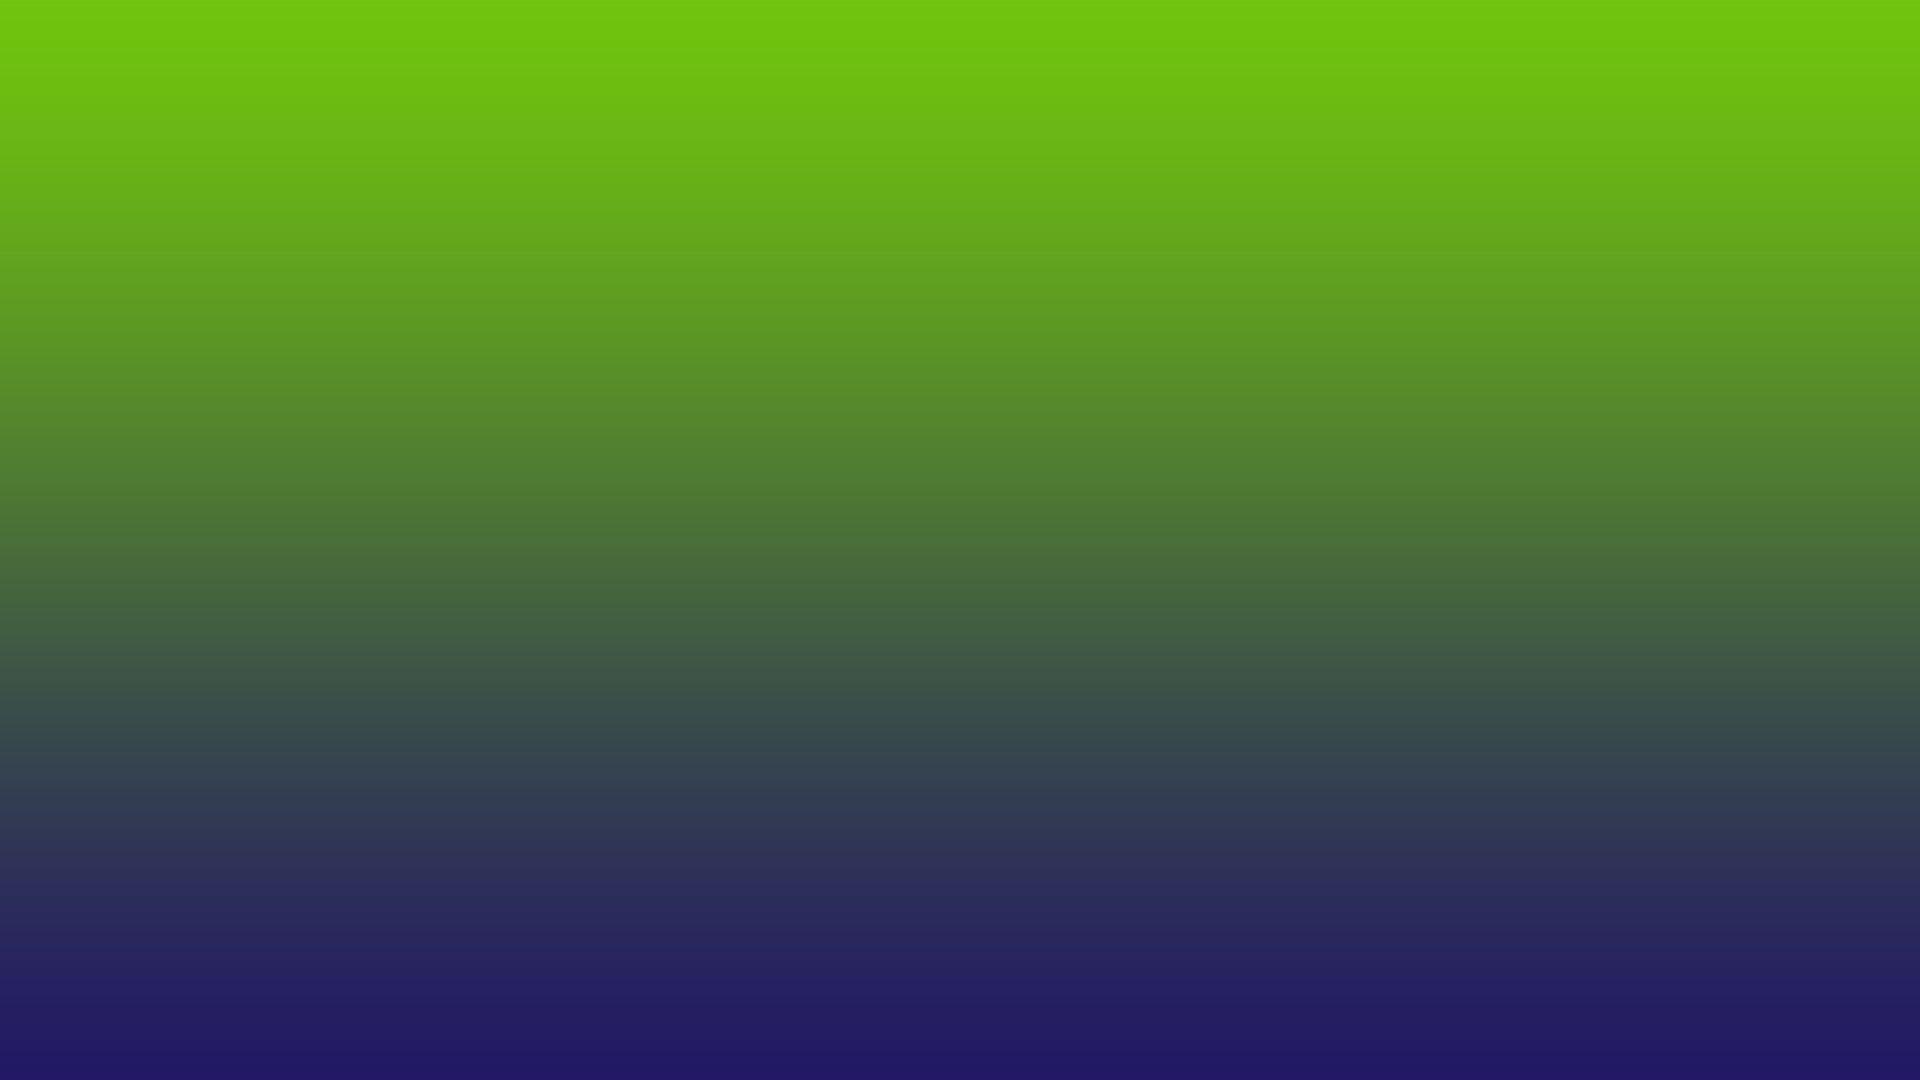 1920x1080 Green and Blue Gradient hình nền 63438 1920x1080px